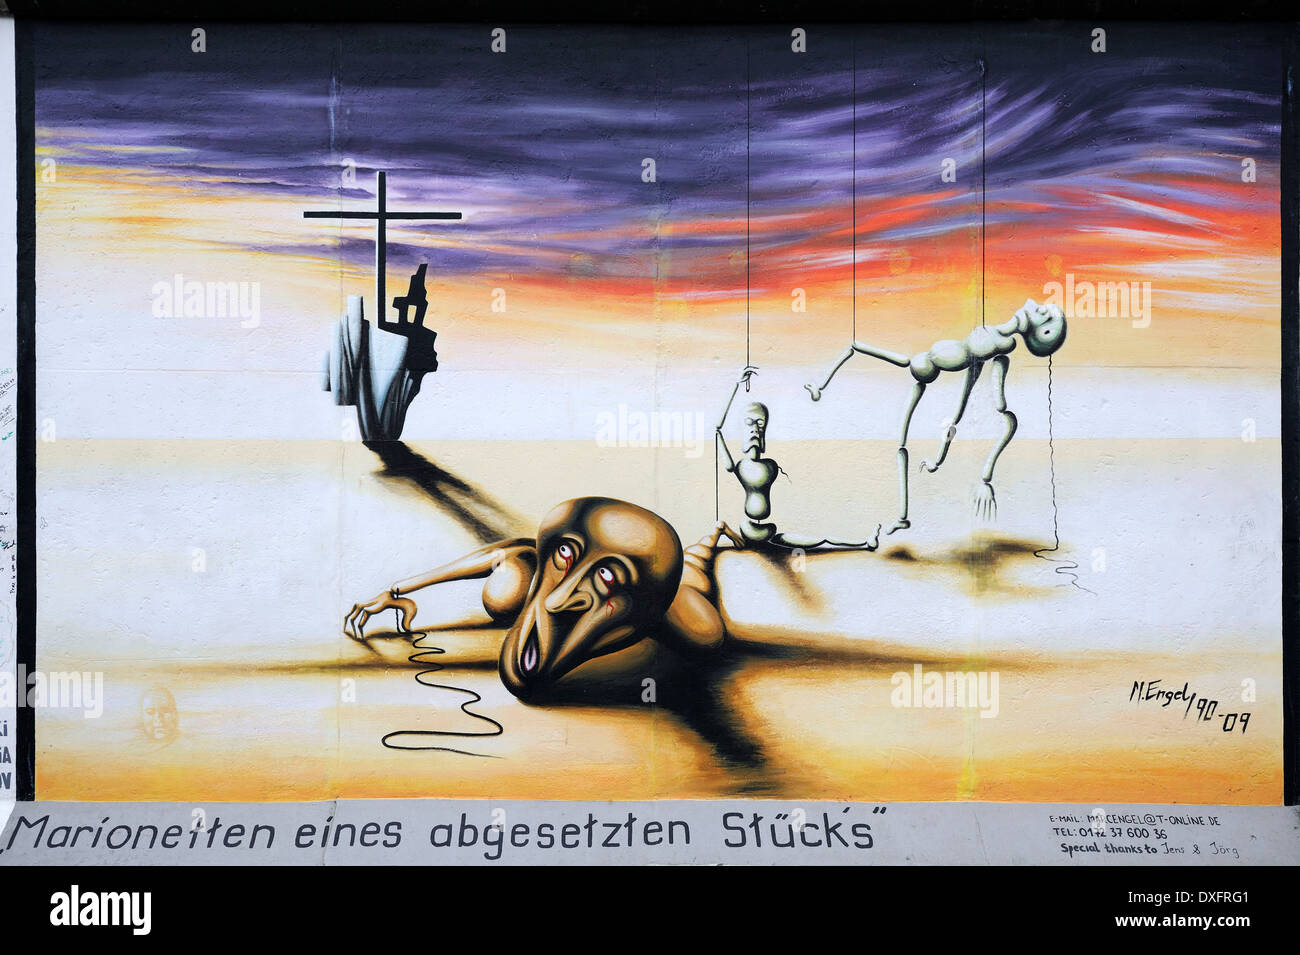 Marionette eines abgesetzten Stucks burattini di un gioco annullato da Marc Engel dipinto sul muro di Berlino East Side Gallery Foto Stock